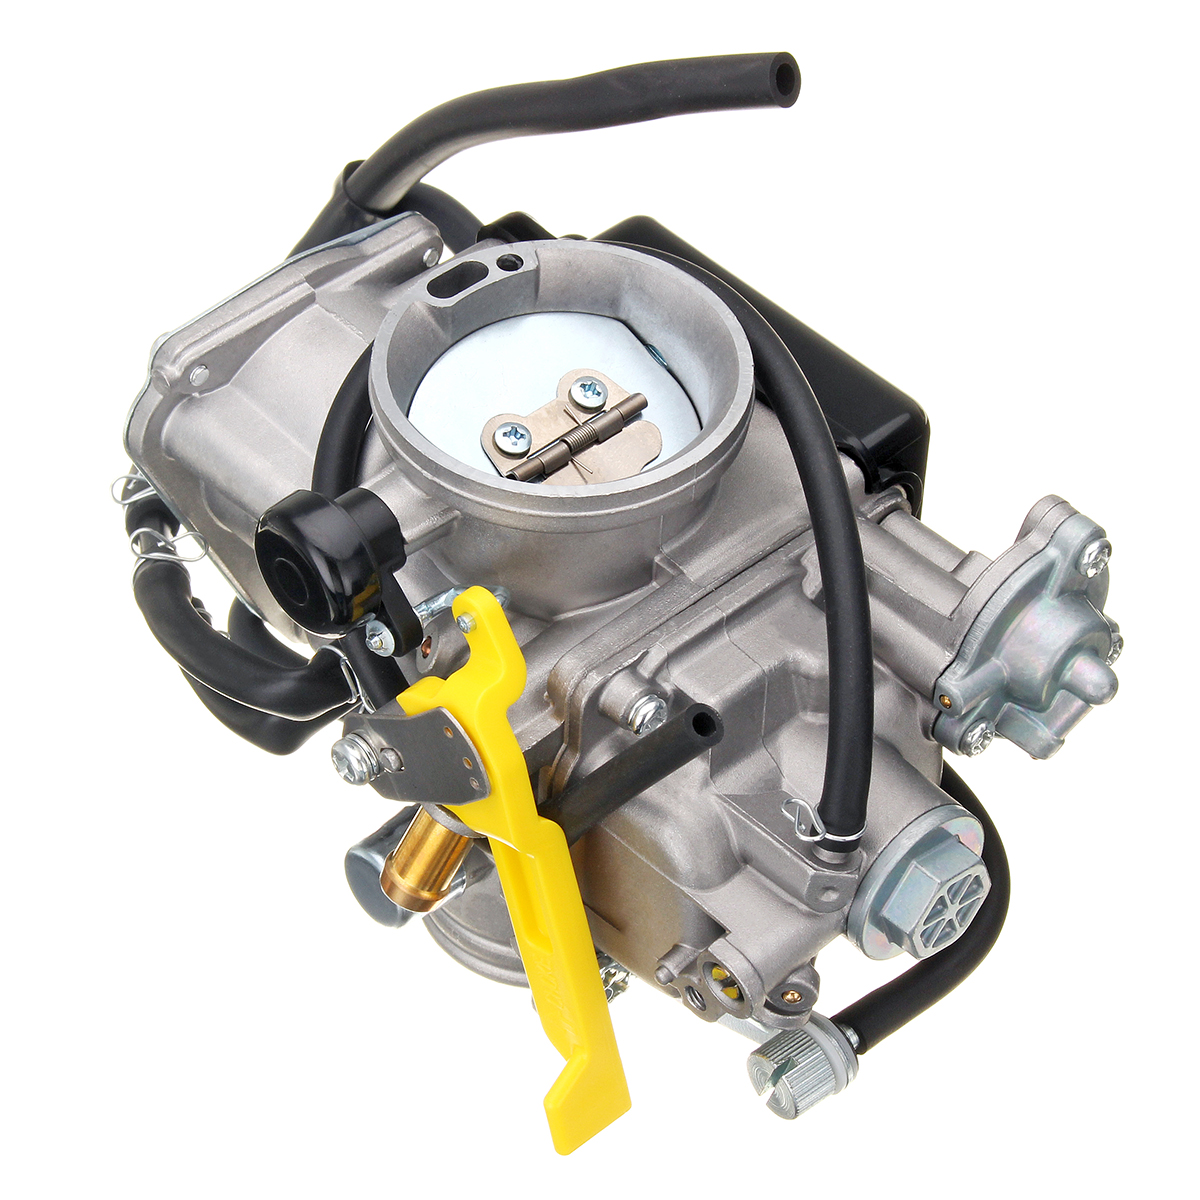 Carburetor Carb For Honda TRX 400 OEM Sportrax 400 16100-HN1-A43 1999-2015